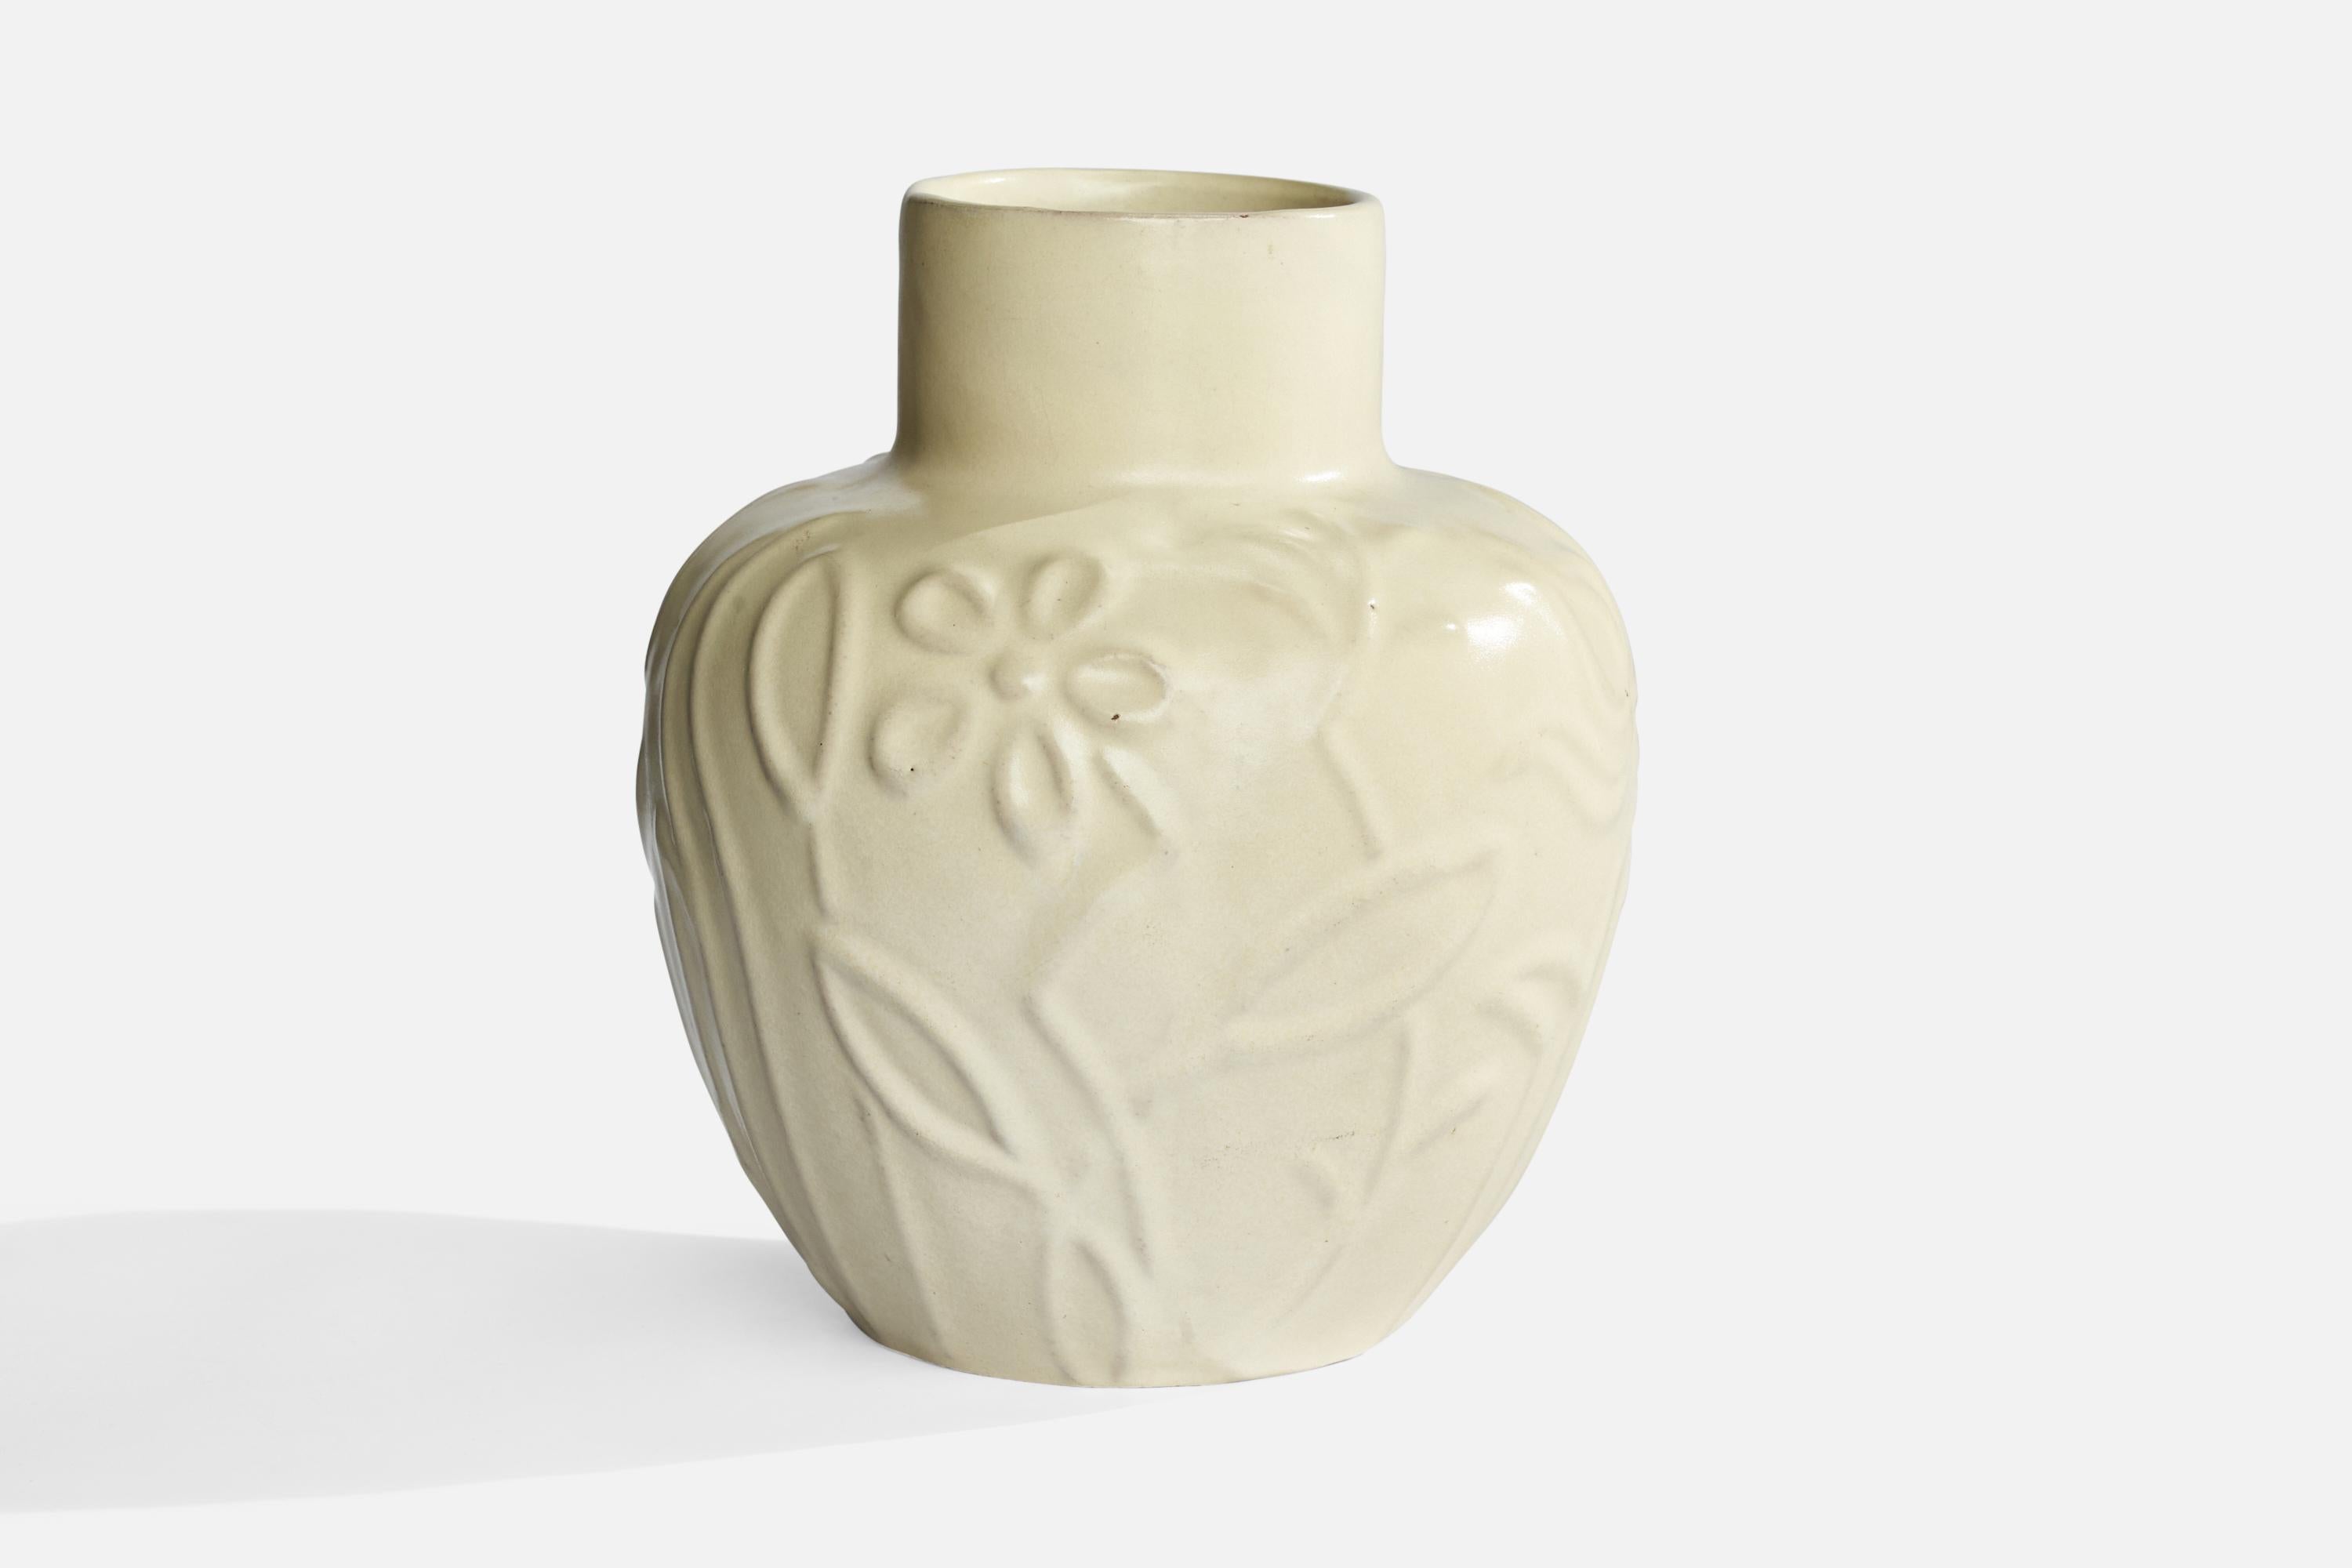 A beige-glazed earthenware vase designed and produced by Upsala Ekeby, Sweden, 1930s.